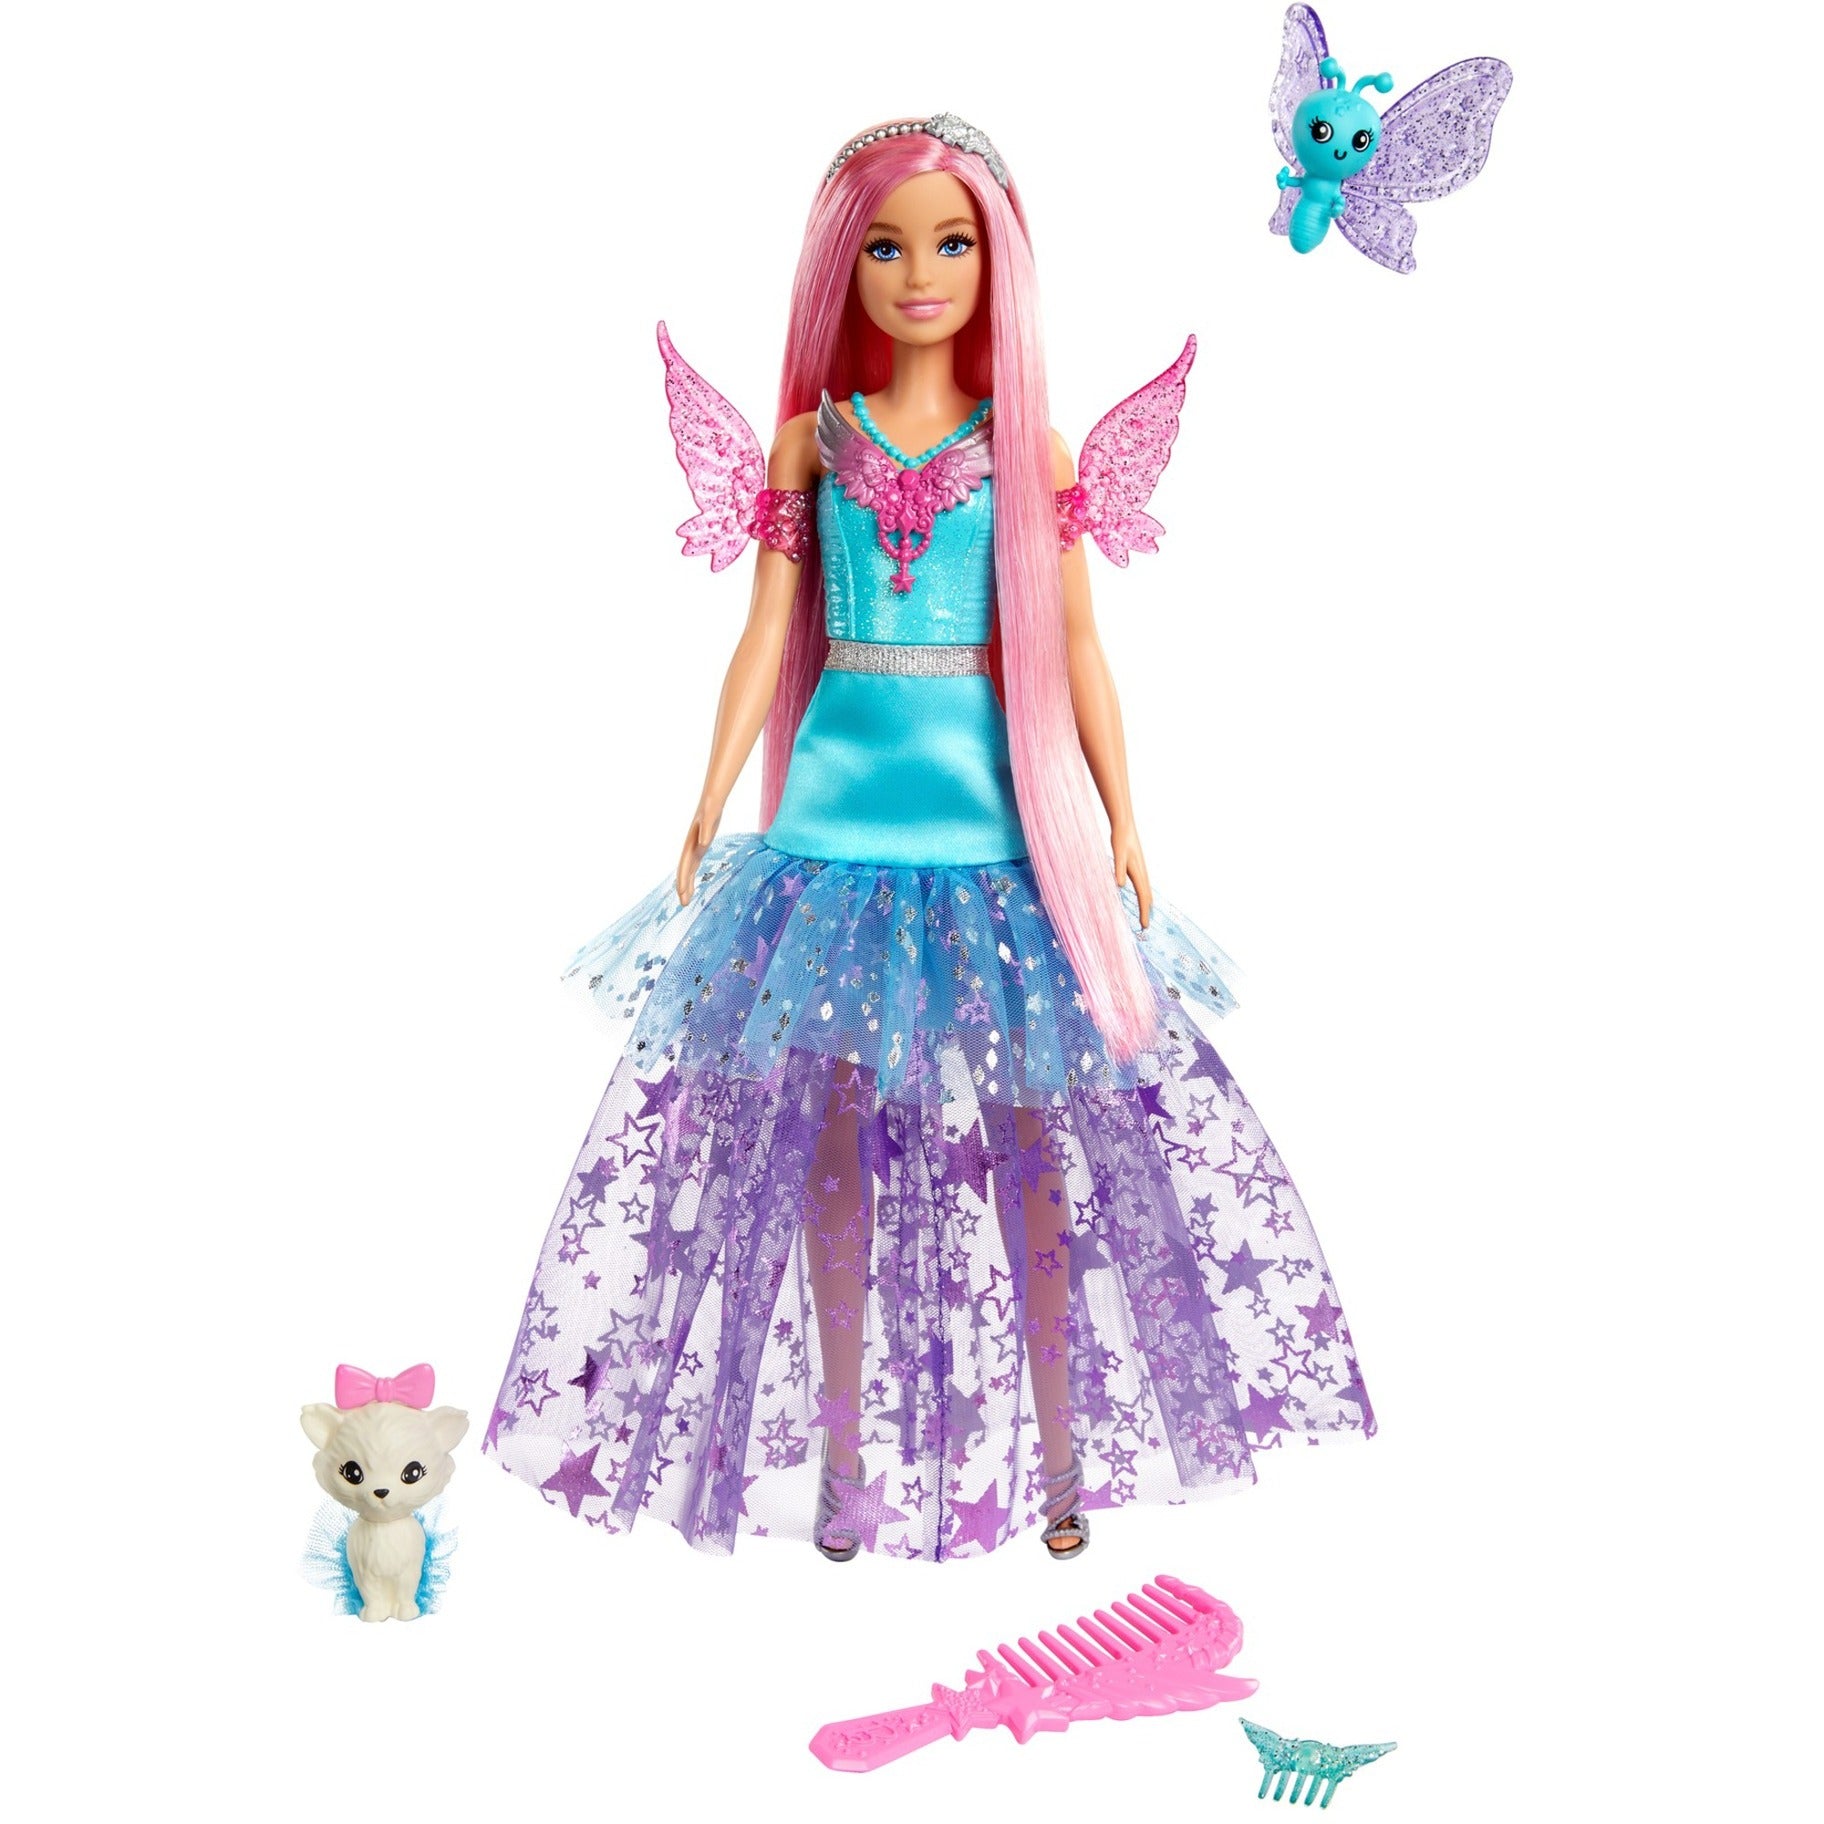 Mattel - Barbie It Takes Two Barbie “Malibu” Roberts Doll